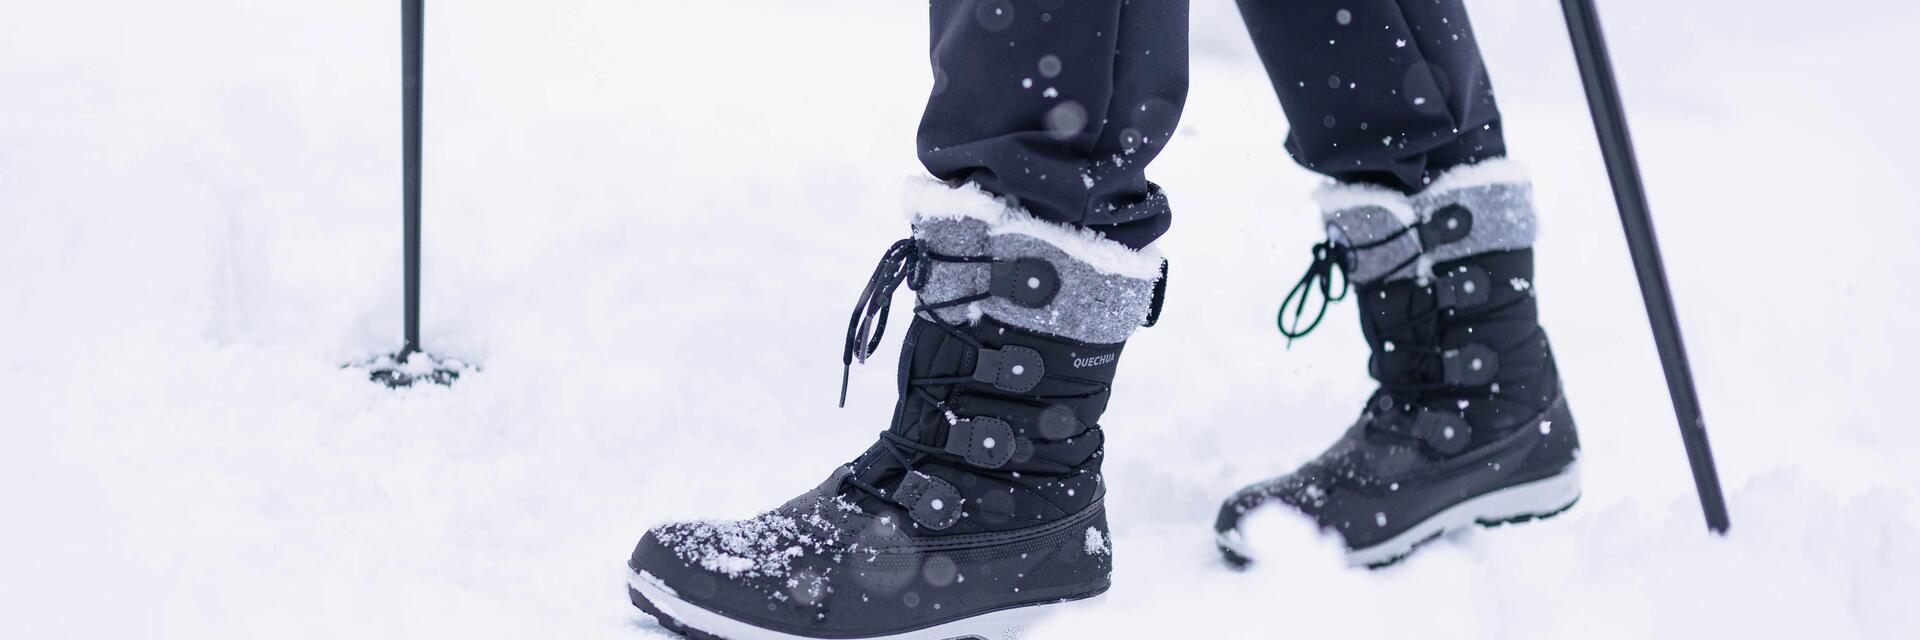 Scegliere bene le scarpe per fare escursioni in inverno